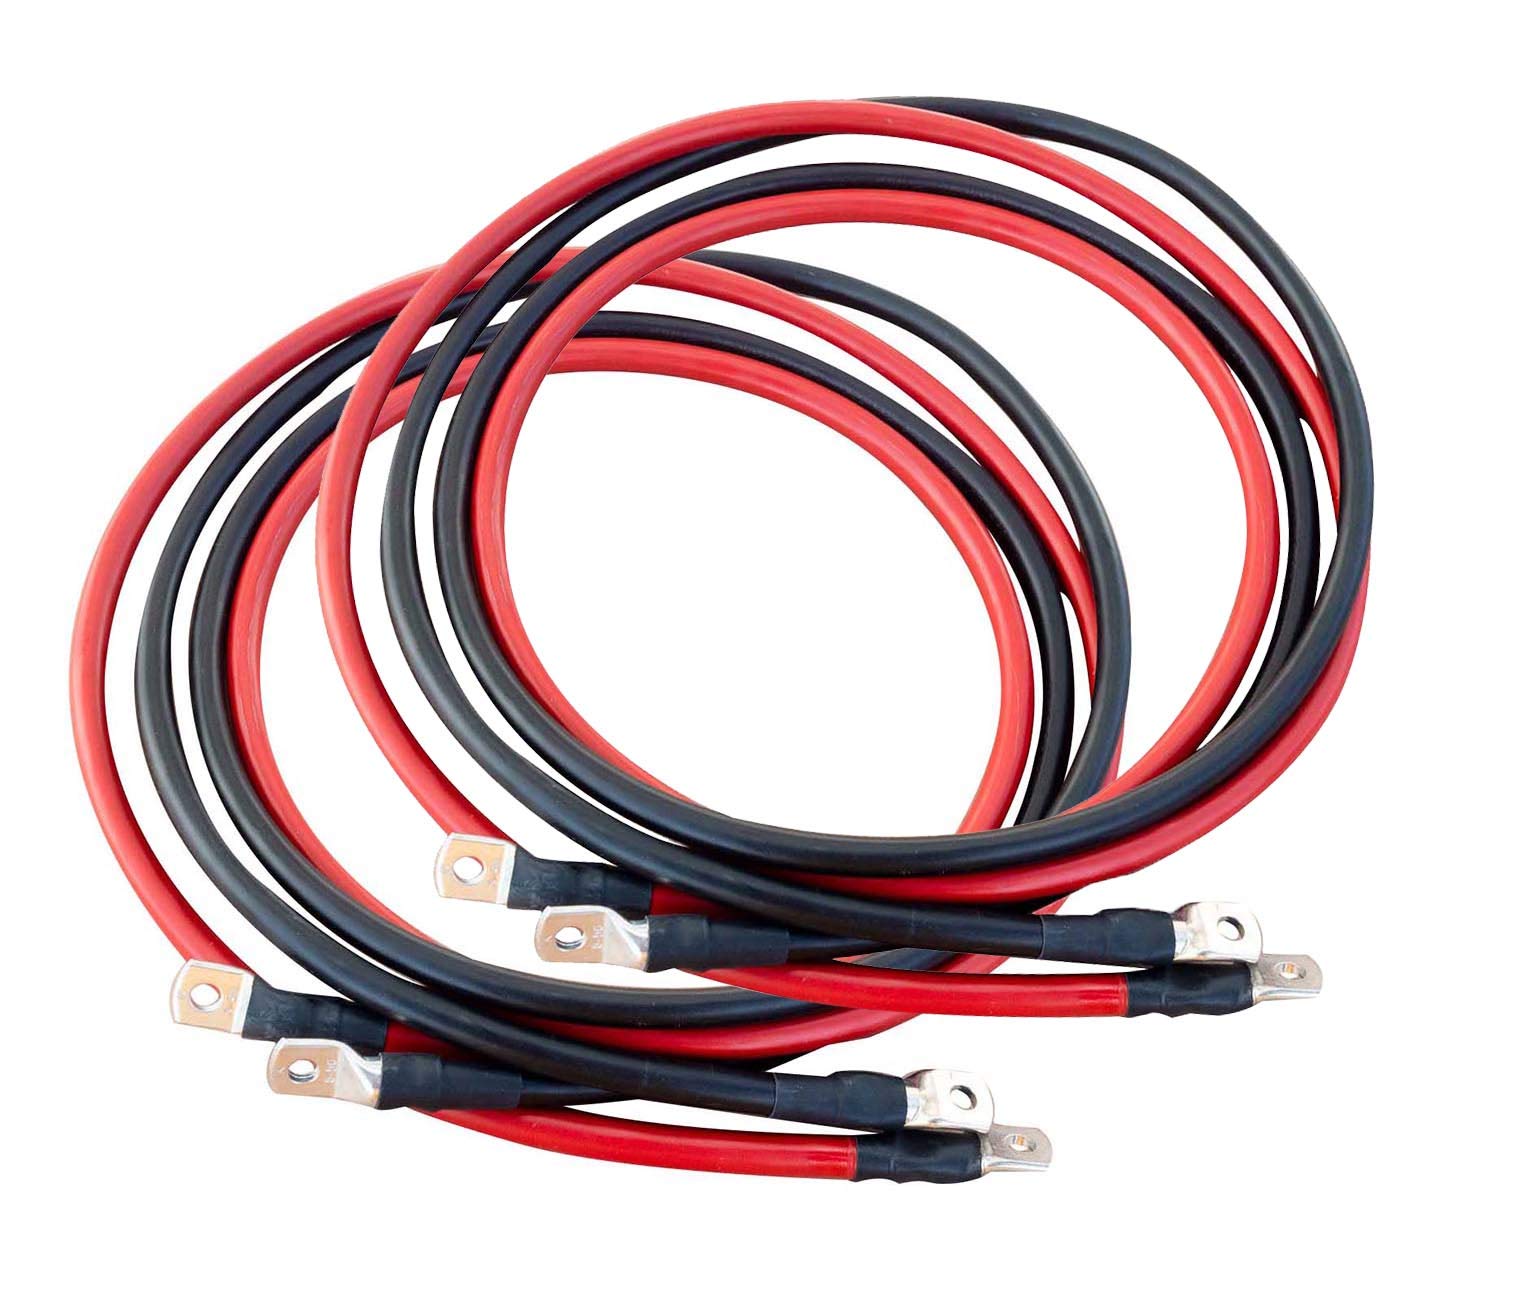 ECTIVE Wechselrichter-Kabel – M8/M8, 2m, rot/schwarz, Kupfer, 50 mm² - Batteriekabel, Kabel-Satz, Kabel für Wechselrichter 3000W mit Ringösen für 12V Batterie, Versorgungsbatterie, Autobatterie von ECTIVE